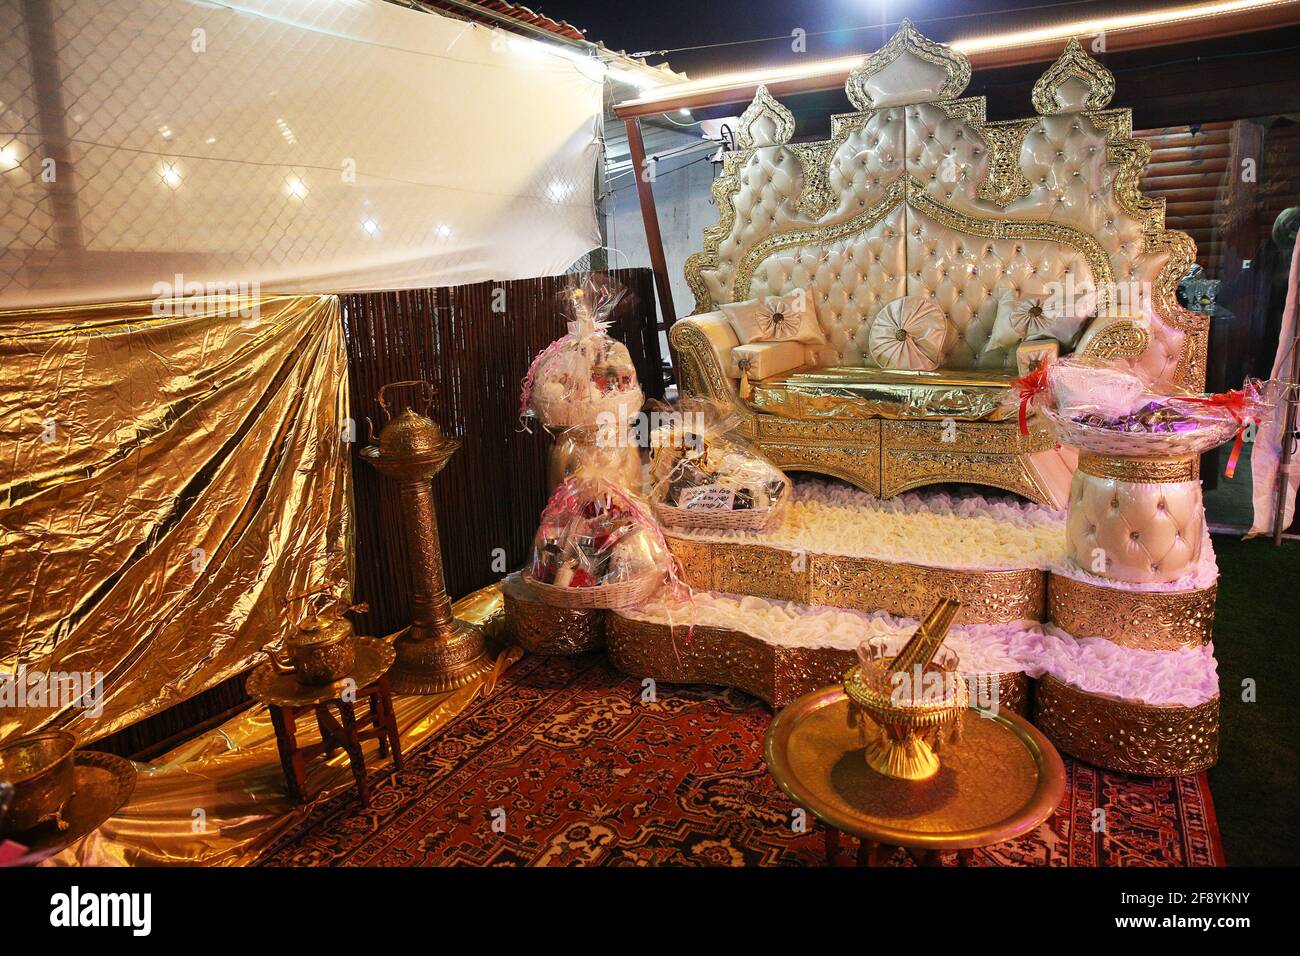 Beautiful photo of the Jewish Hupa , wedding putdoor . Stock Photo